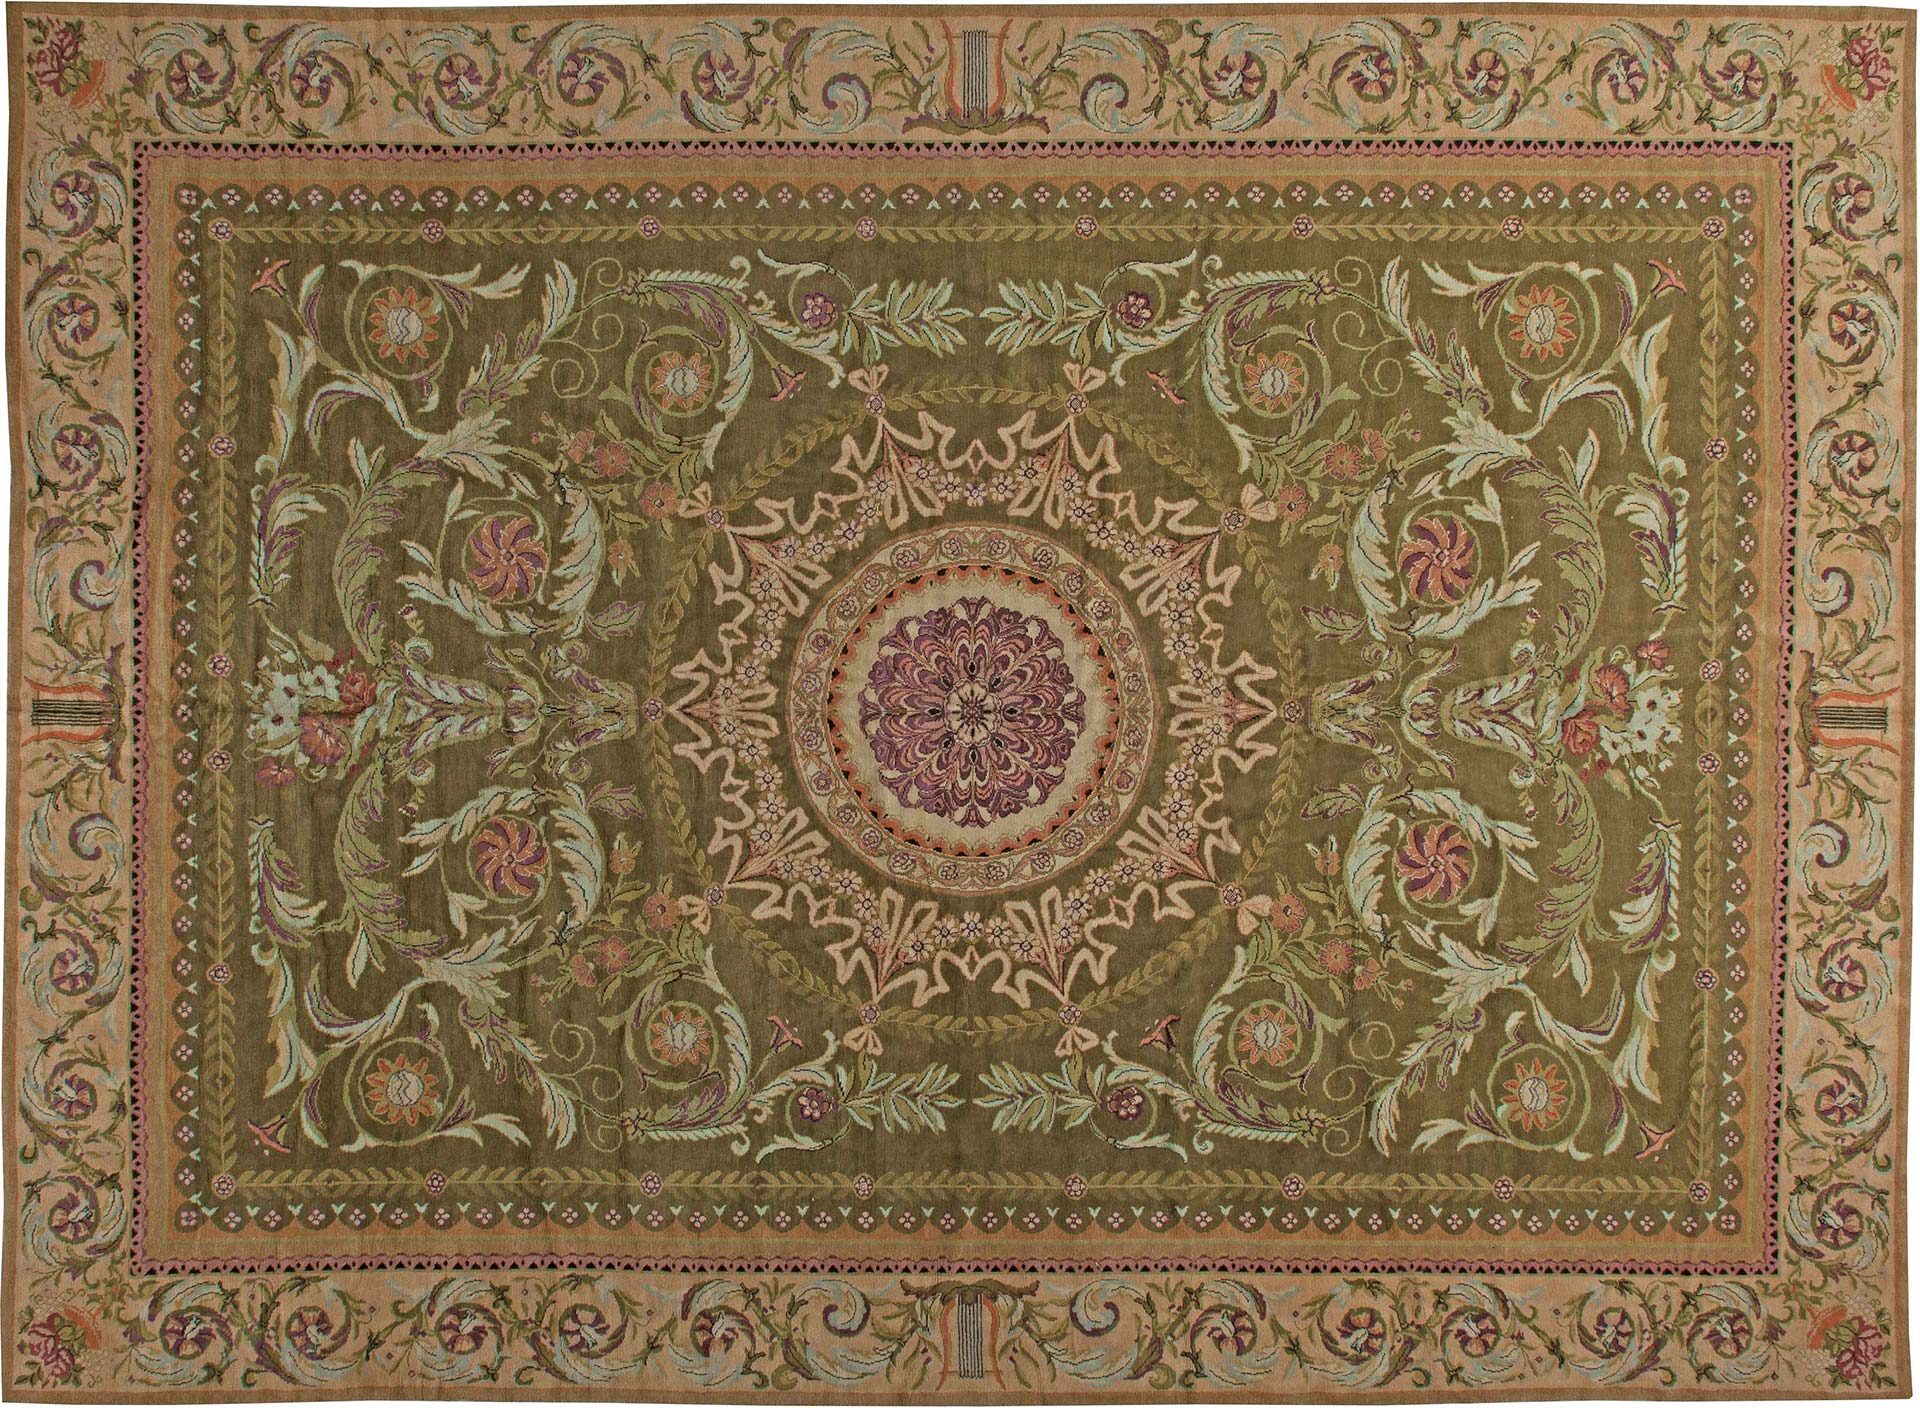 Ein übergroßer antiker Savonnerie-Teppich in Moosgrün. Etwa um 1900, Frankreich. Größe des Teppichs: 16'3